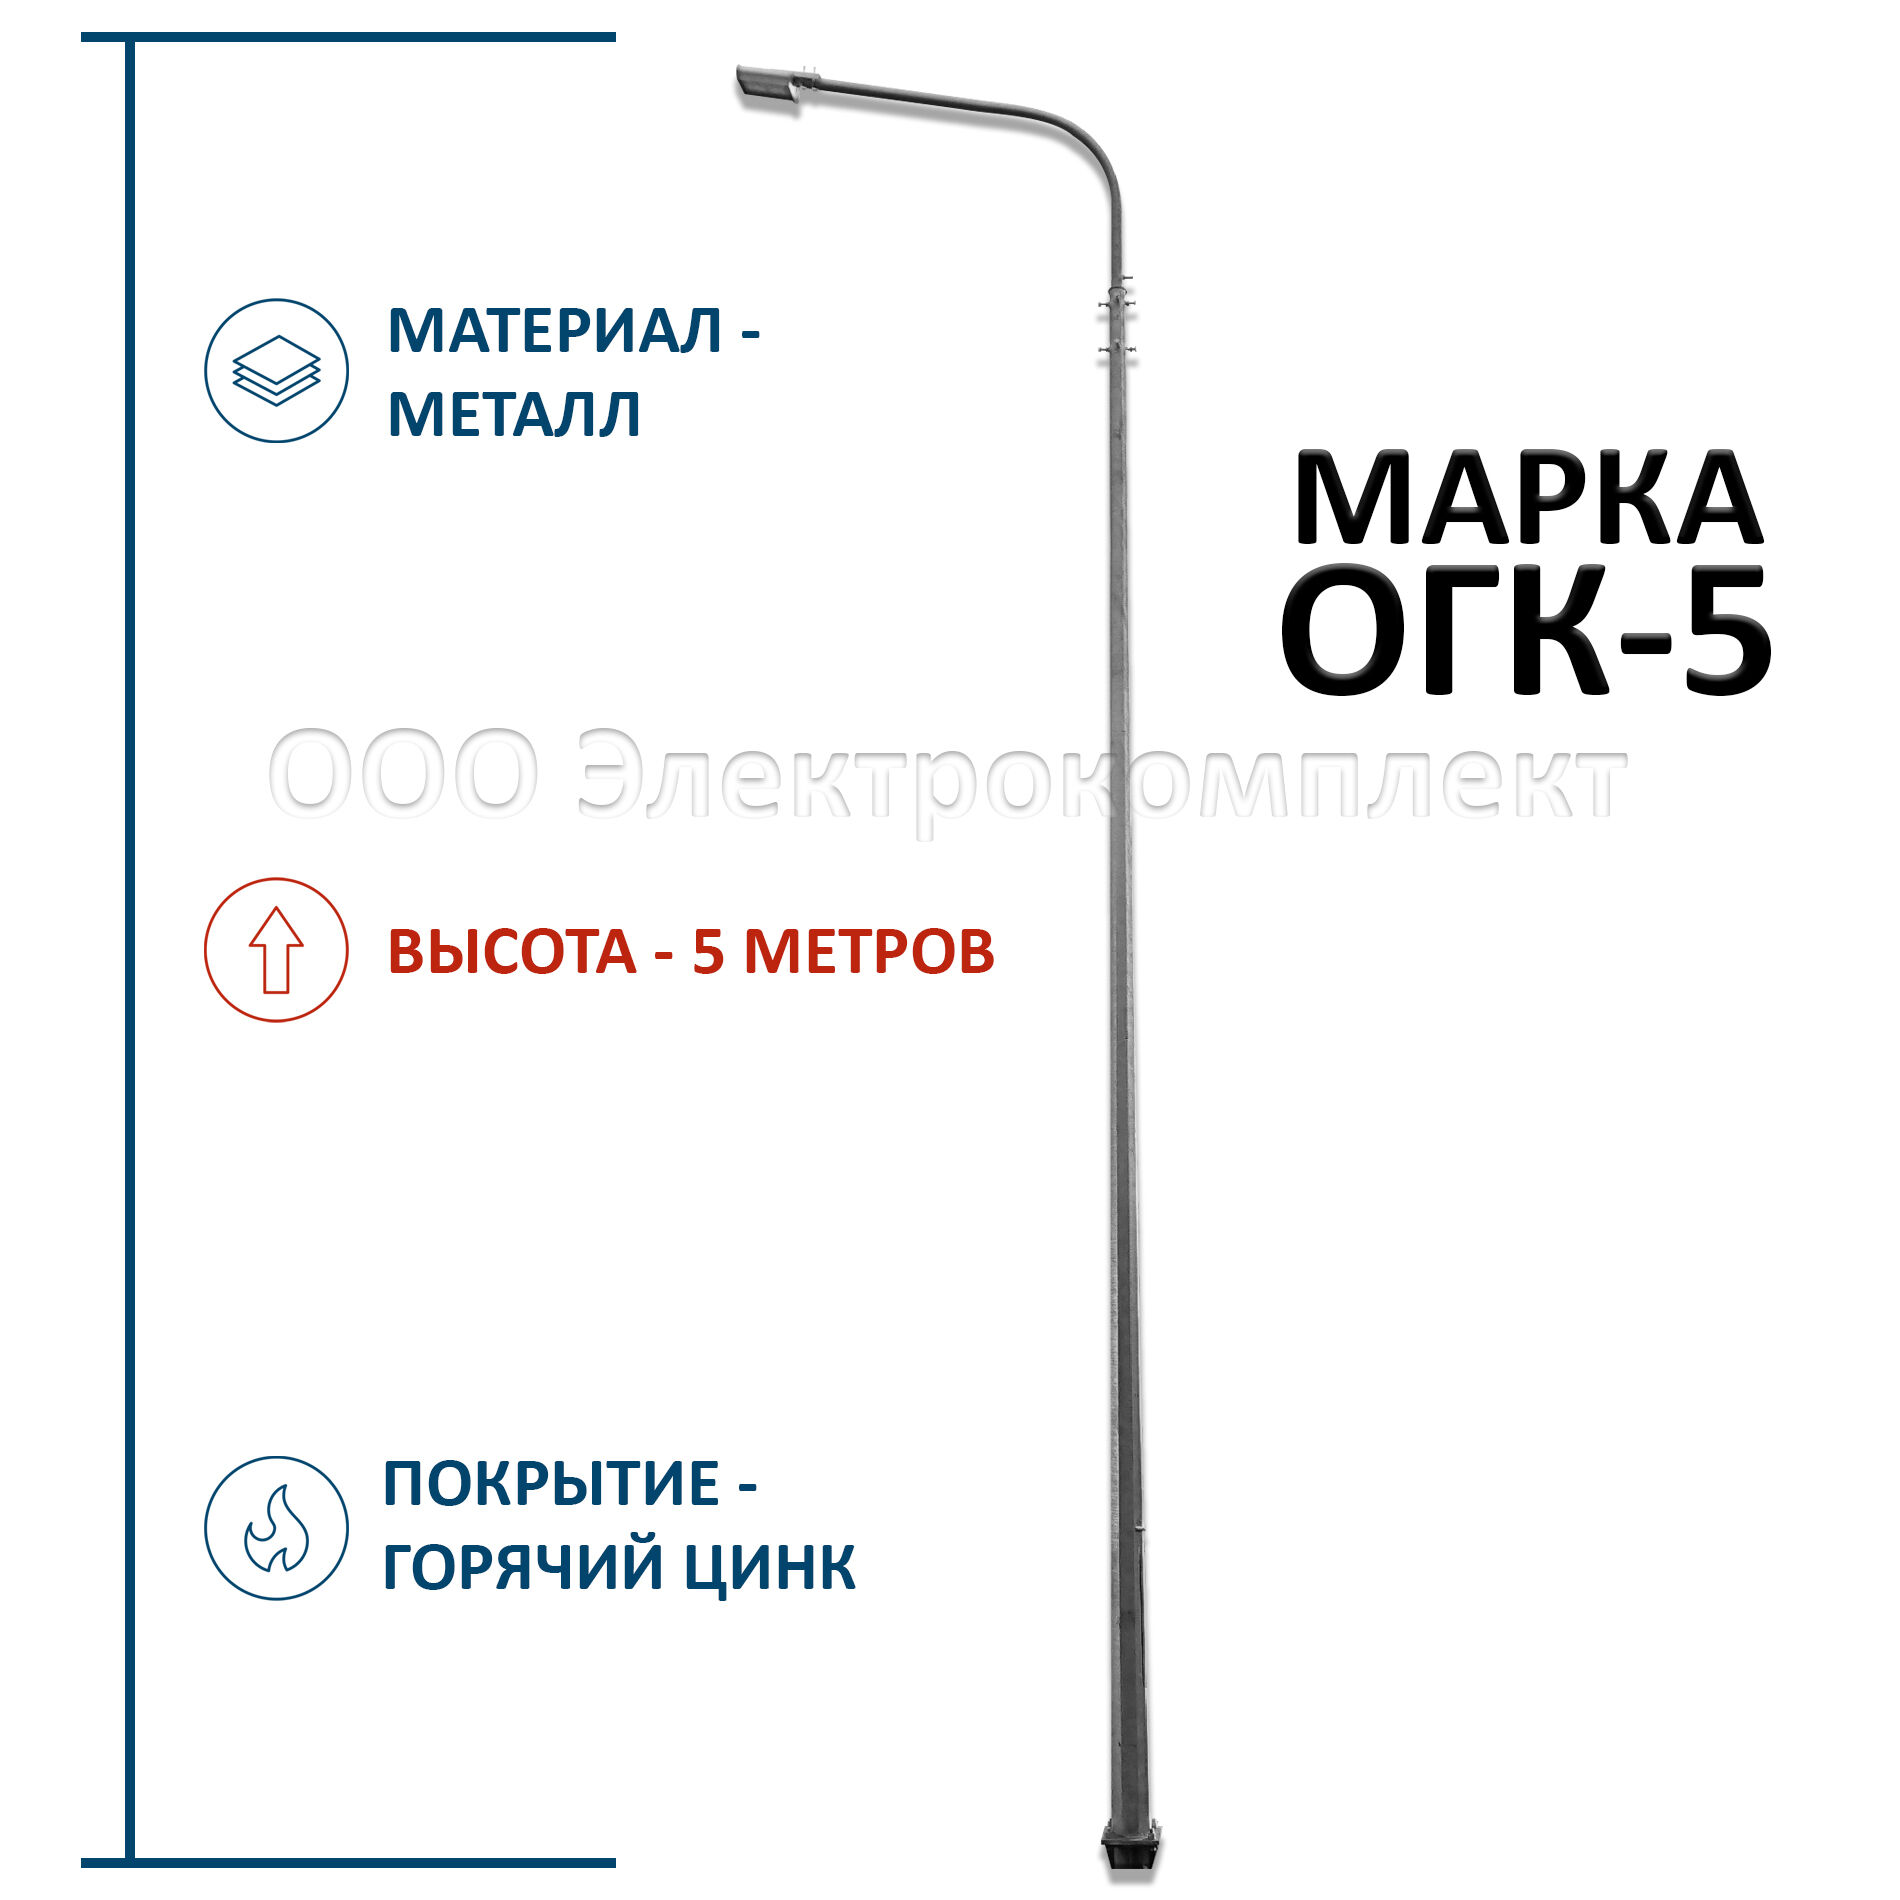 Опора ОГК-5 металлическая